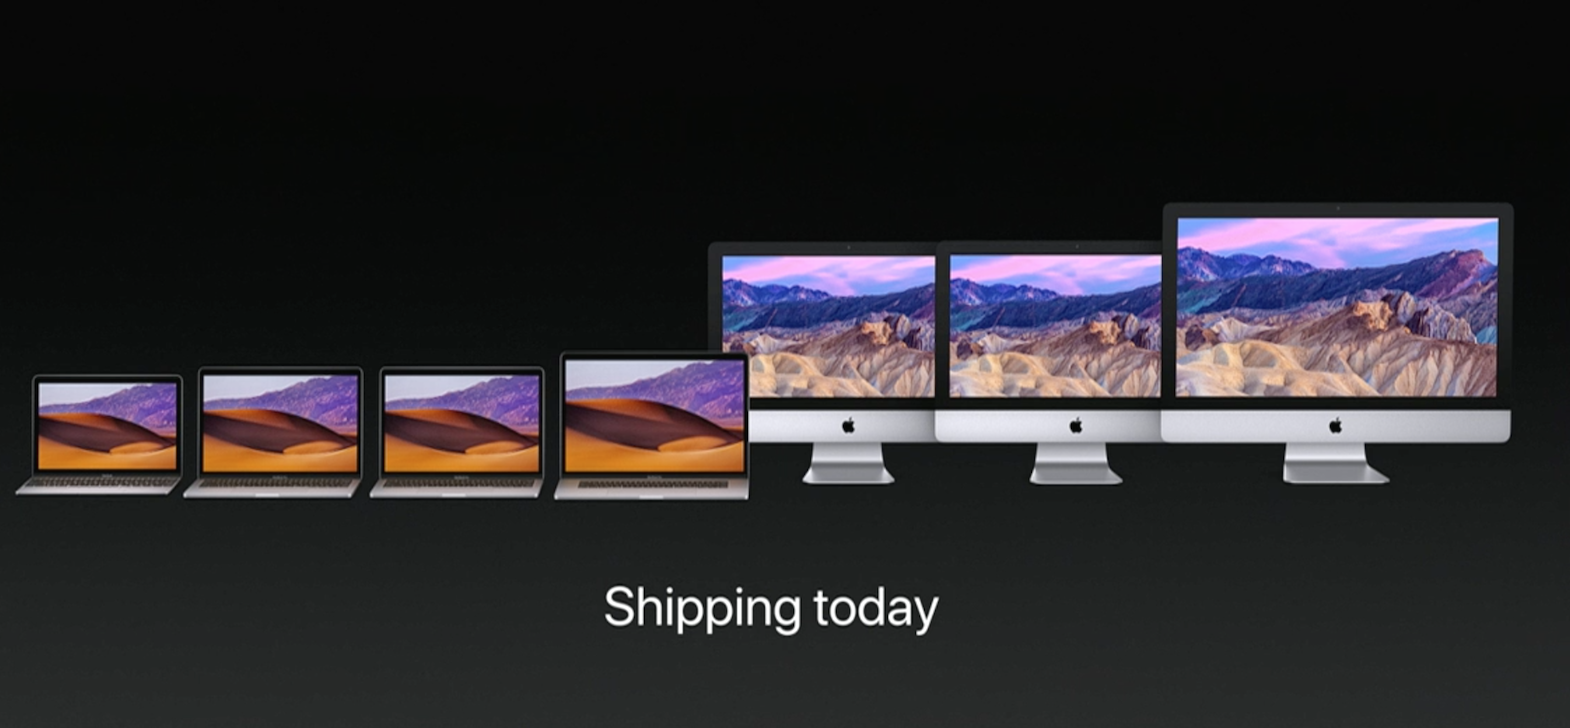 MacBook, MacBook Pro, iMac